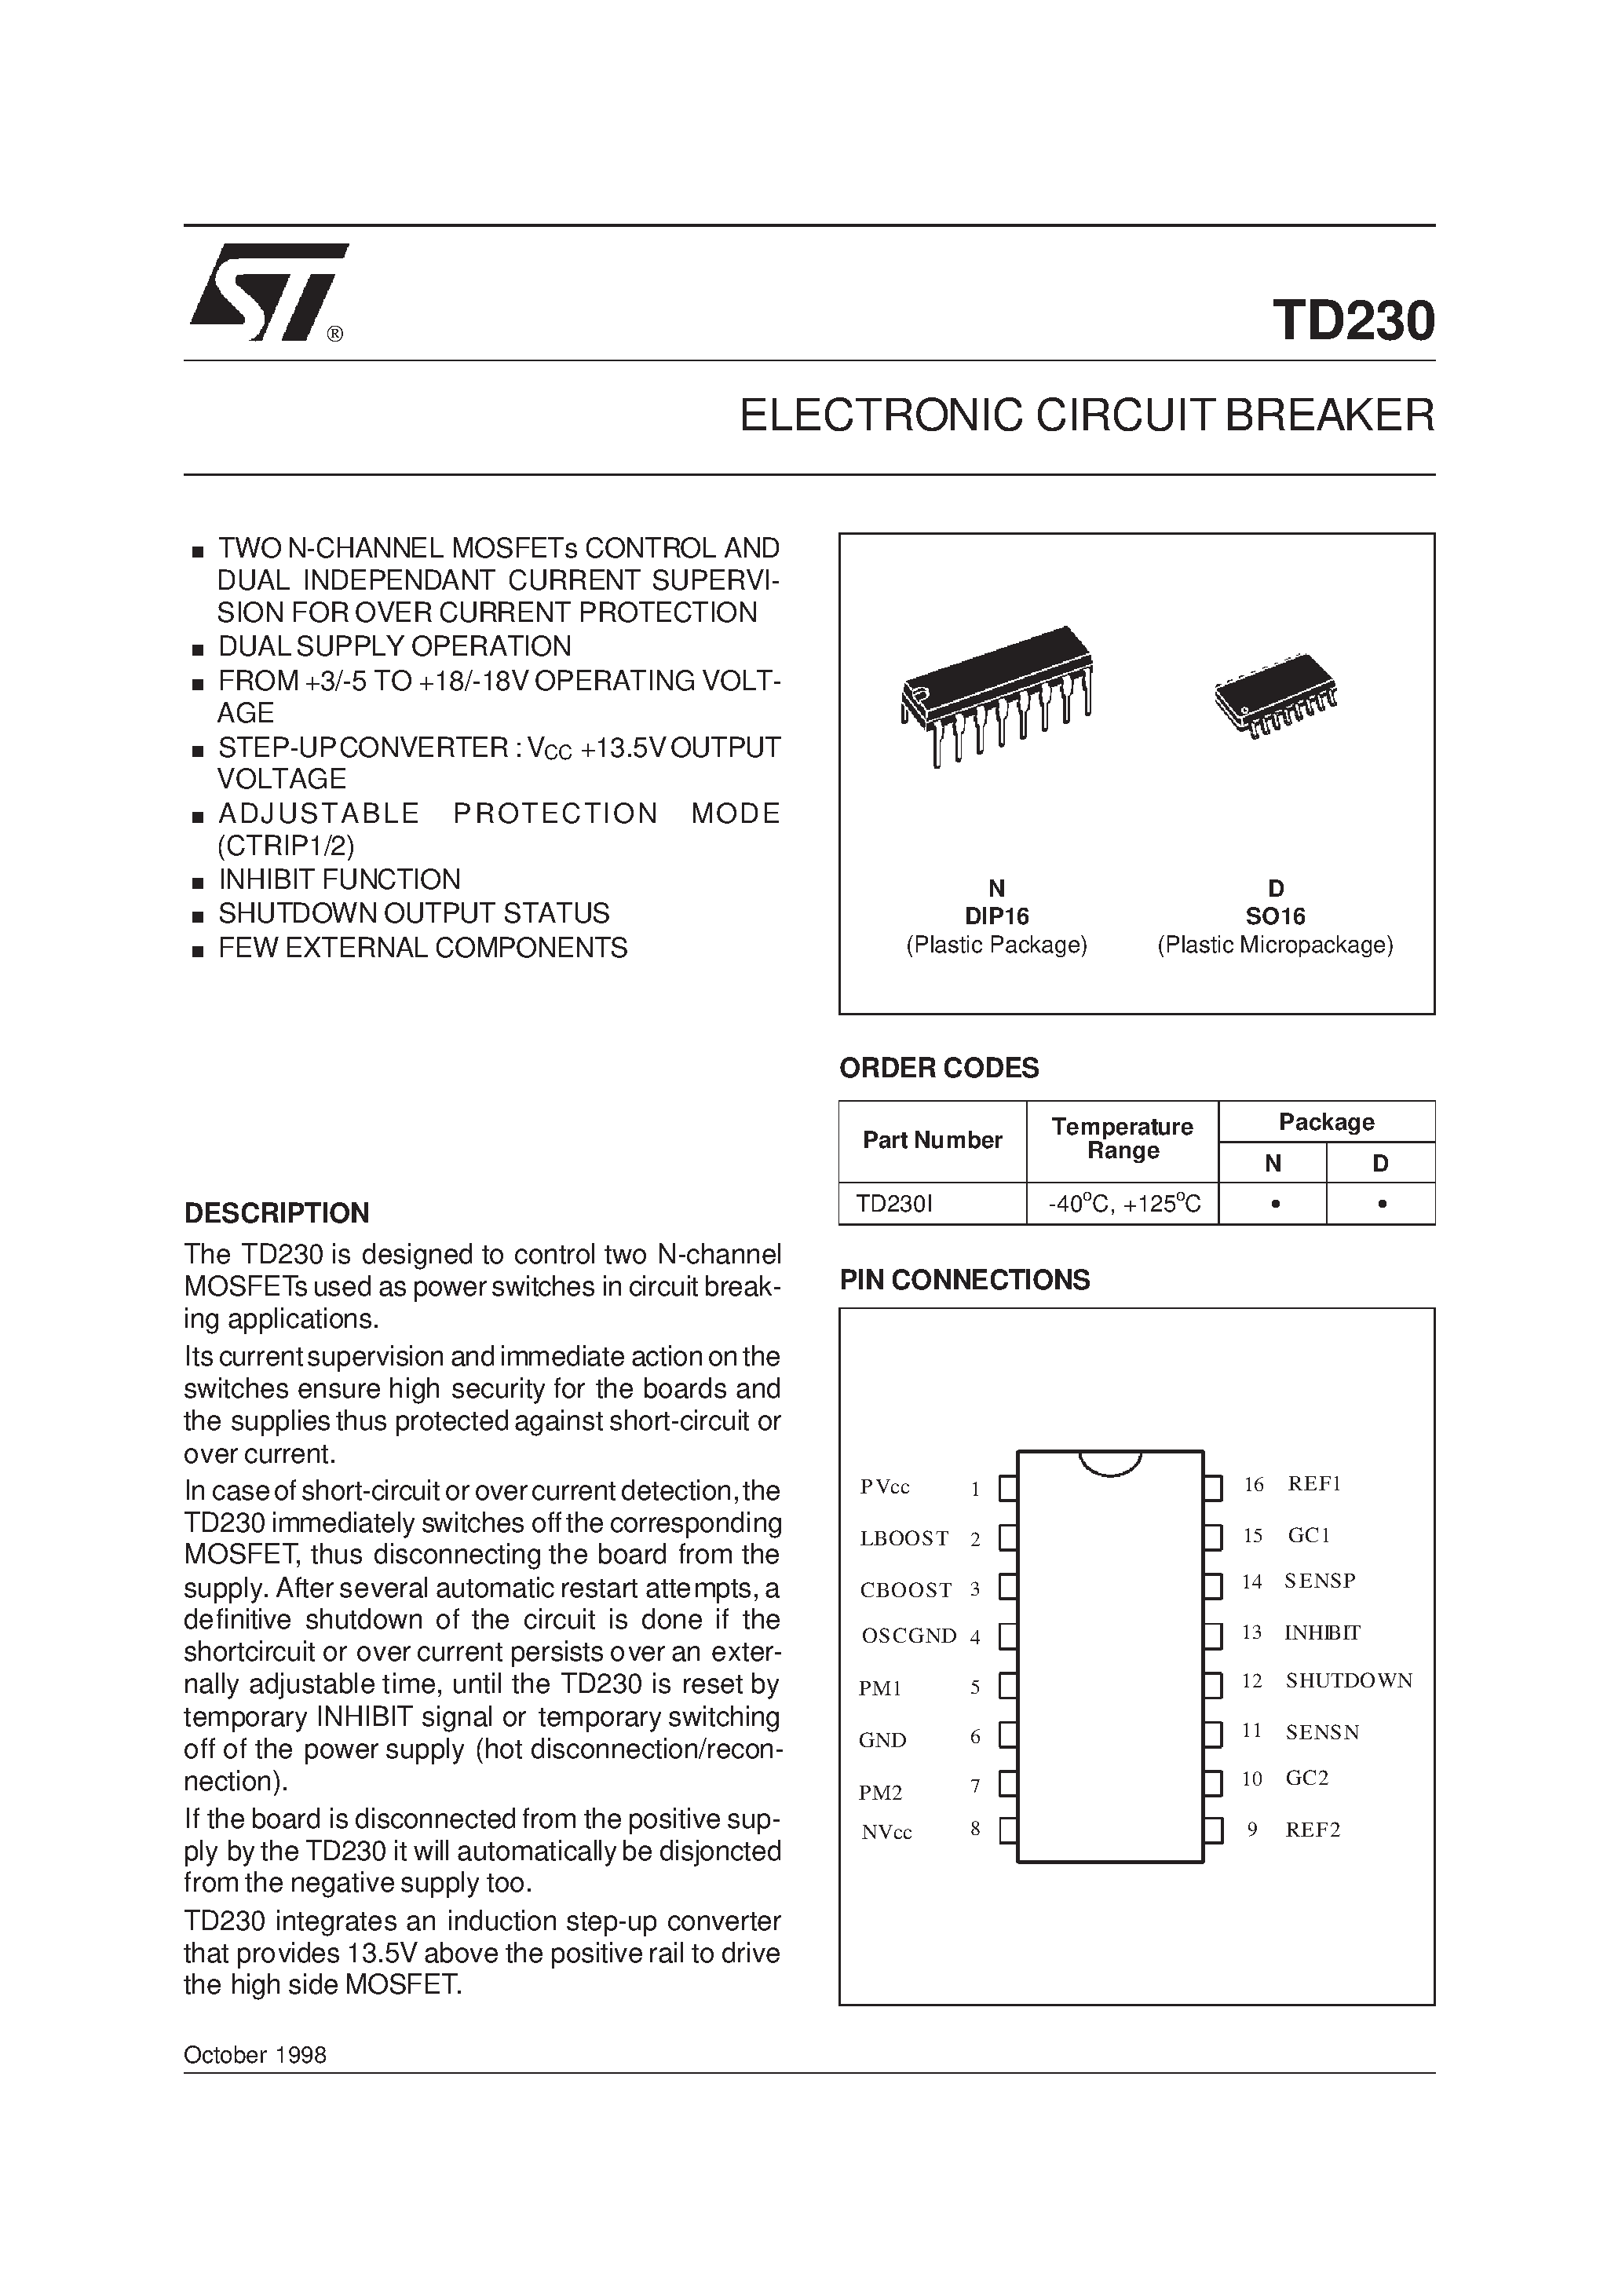 Даташит TD230D - ELECTRONIC CIRCUIT BREAKER страница 1